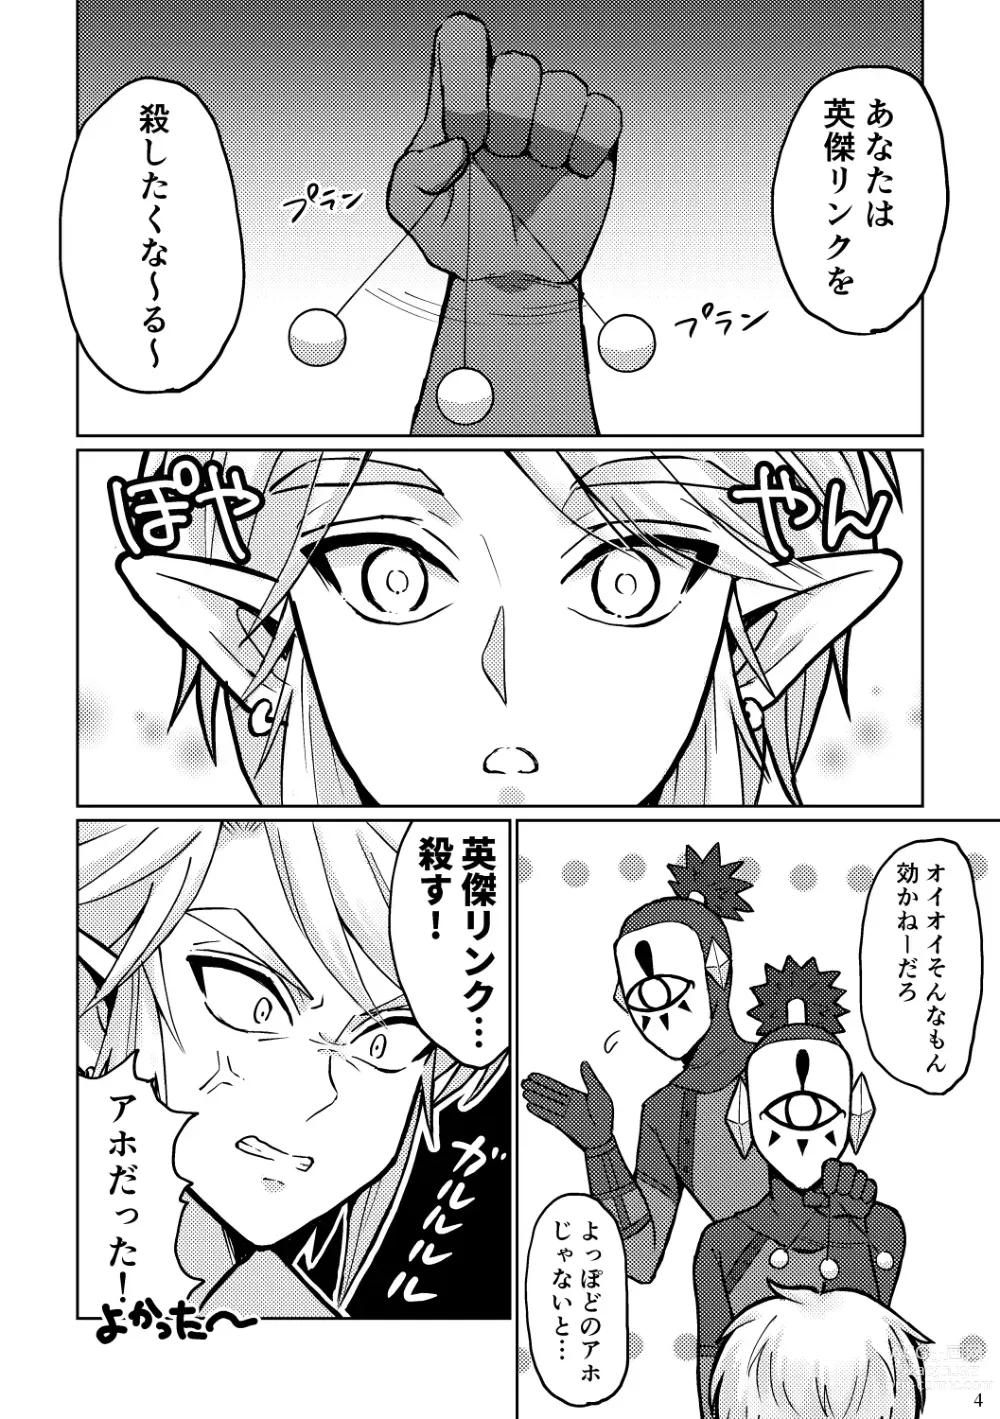 Page 4 of doujinshi Docchi ga Ookami Nandaka Wakaranai.